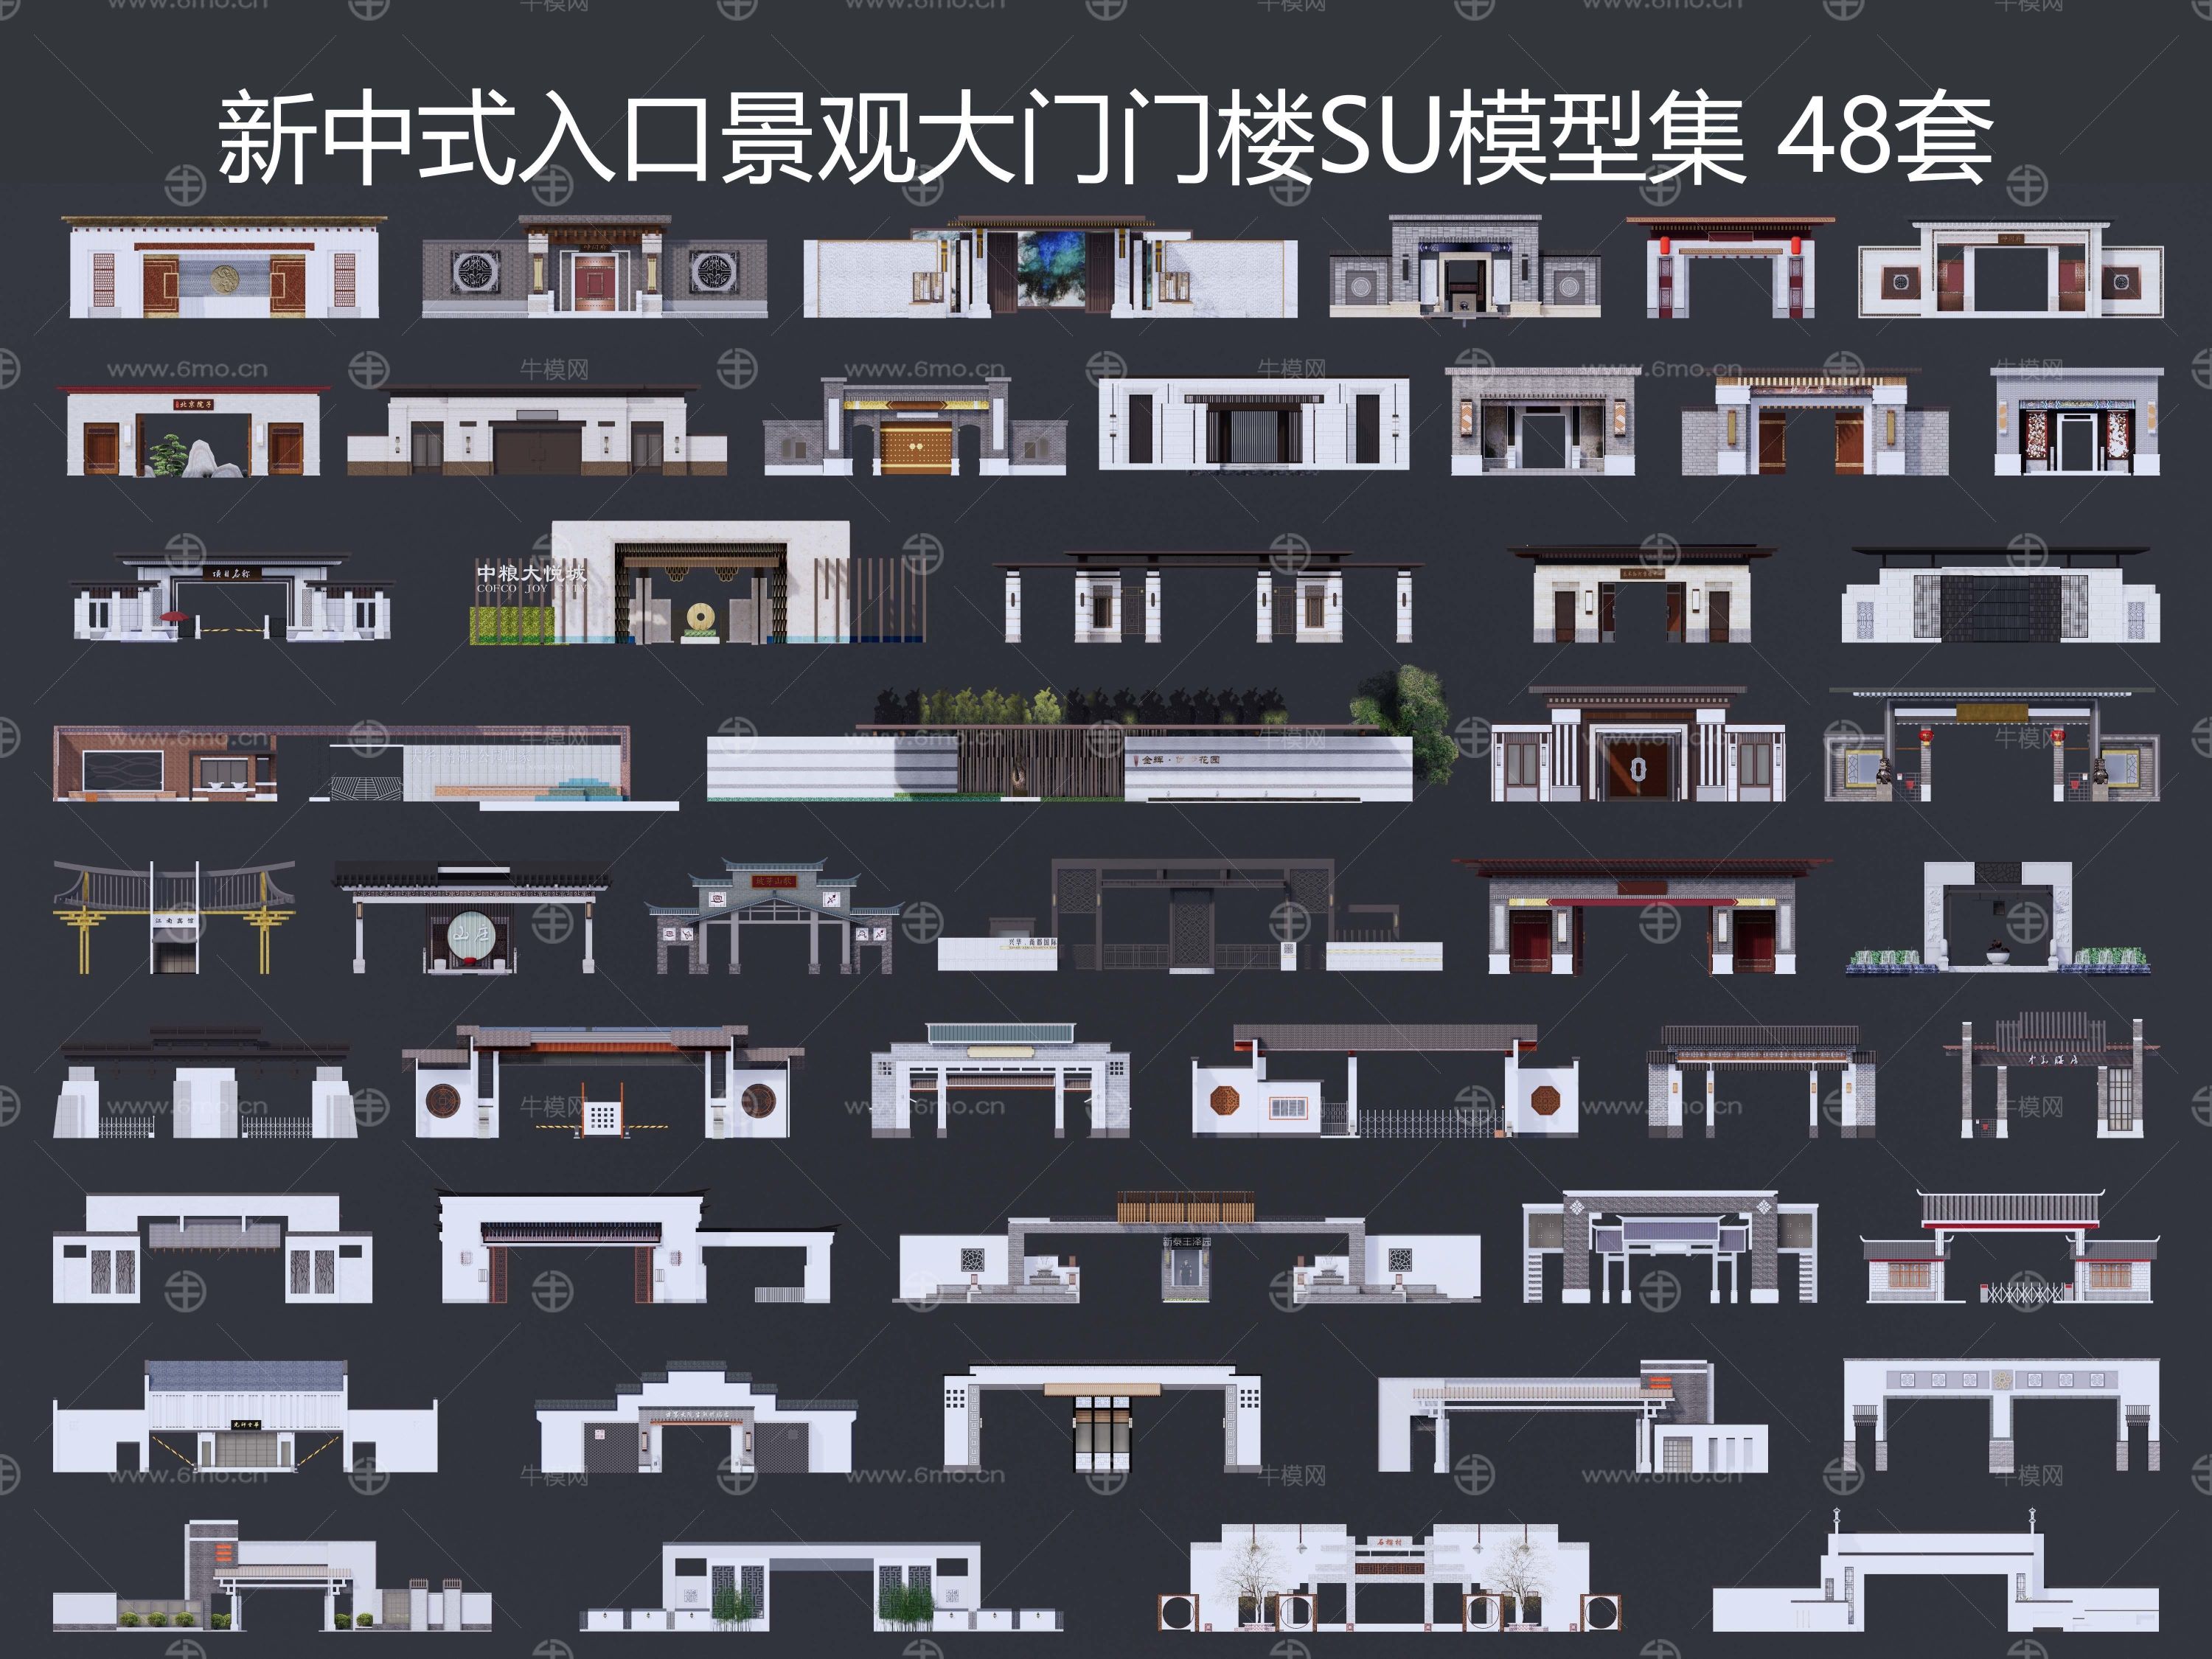 新中式入口景观大门门楼SU模型集 48套